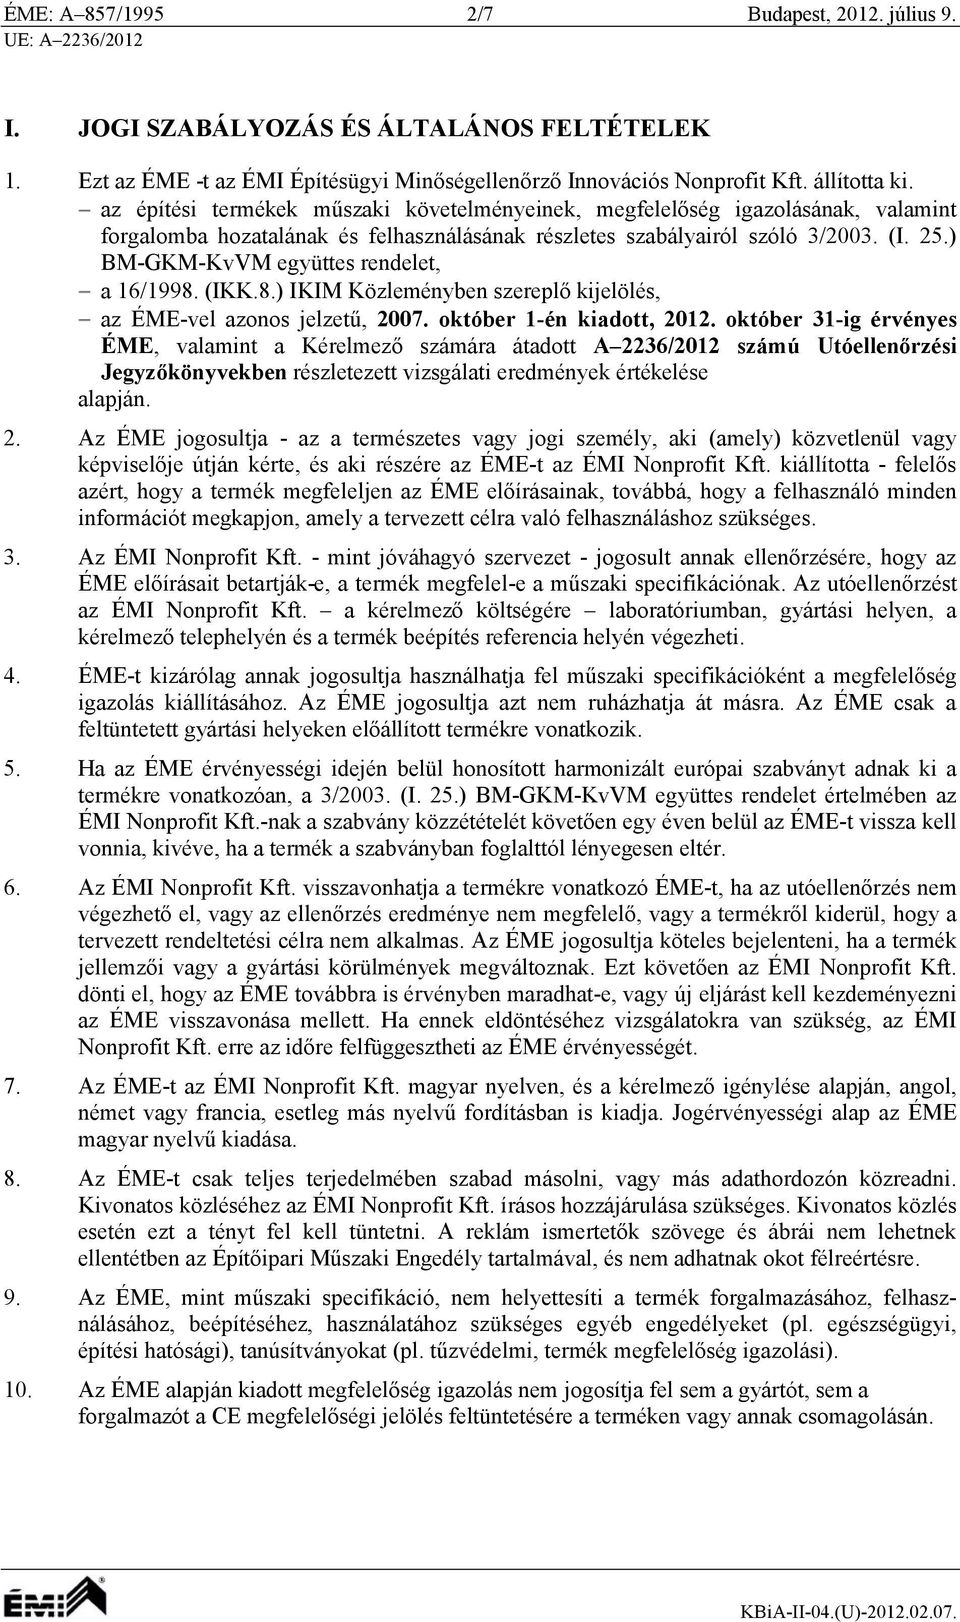 ) BM-GKM-KvVM együttes rendelet, a 16/1998. (IKK.8.) IKIM Közleményben szereplő kijelölés, az ÉME-vel azonos jelzetű, 2007. október 1-én kiadott, 2012.